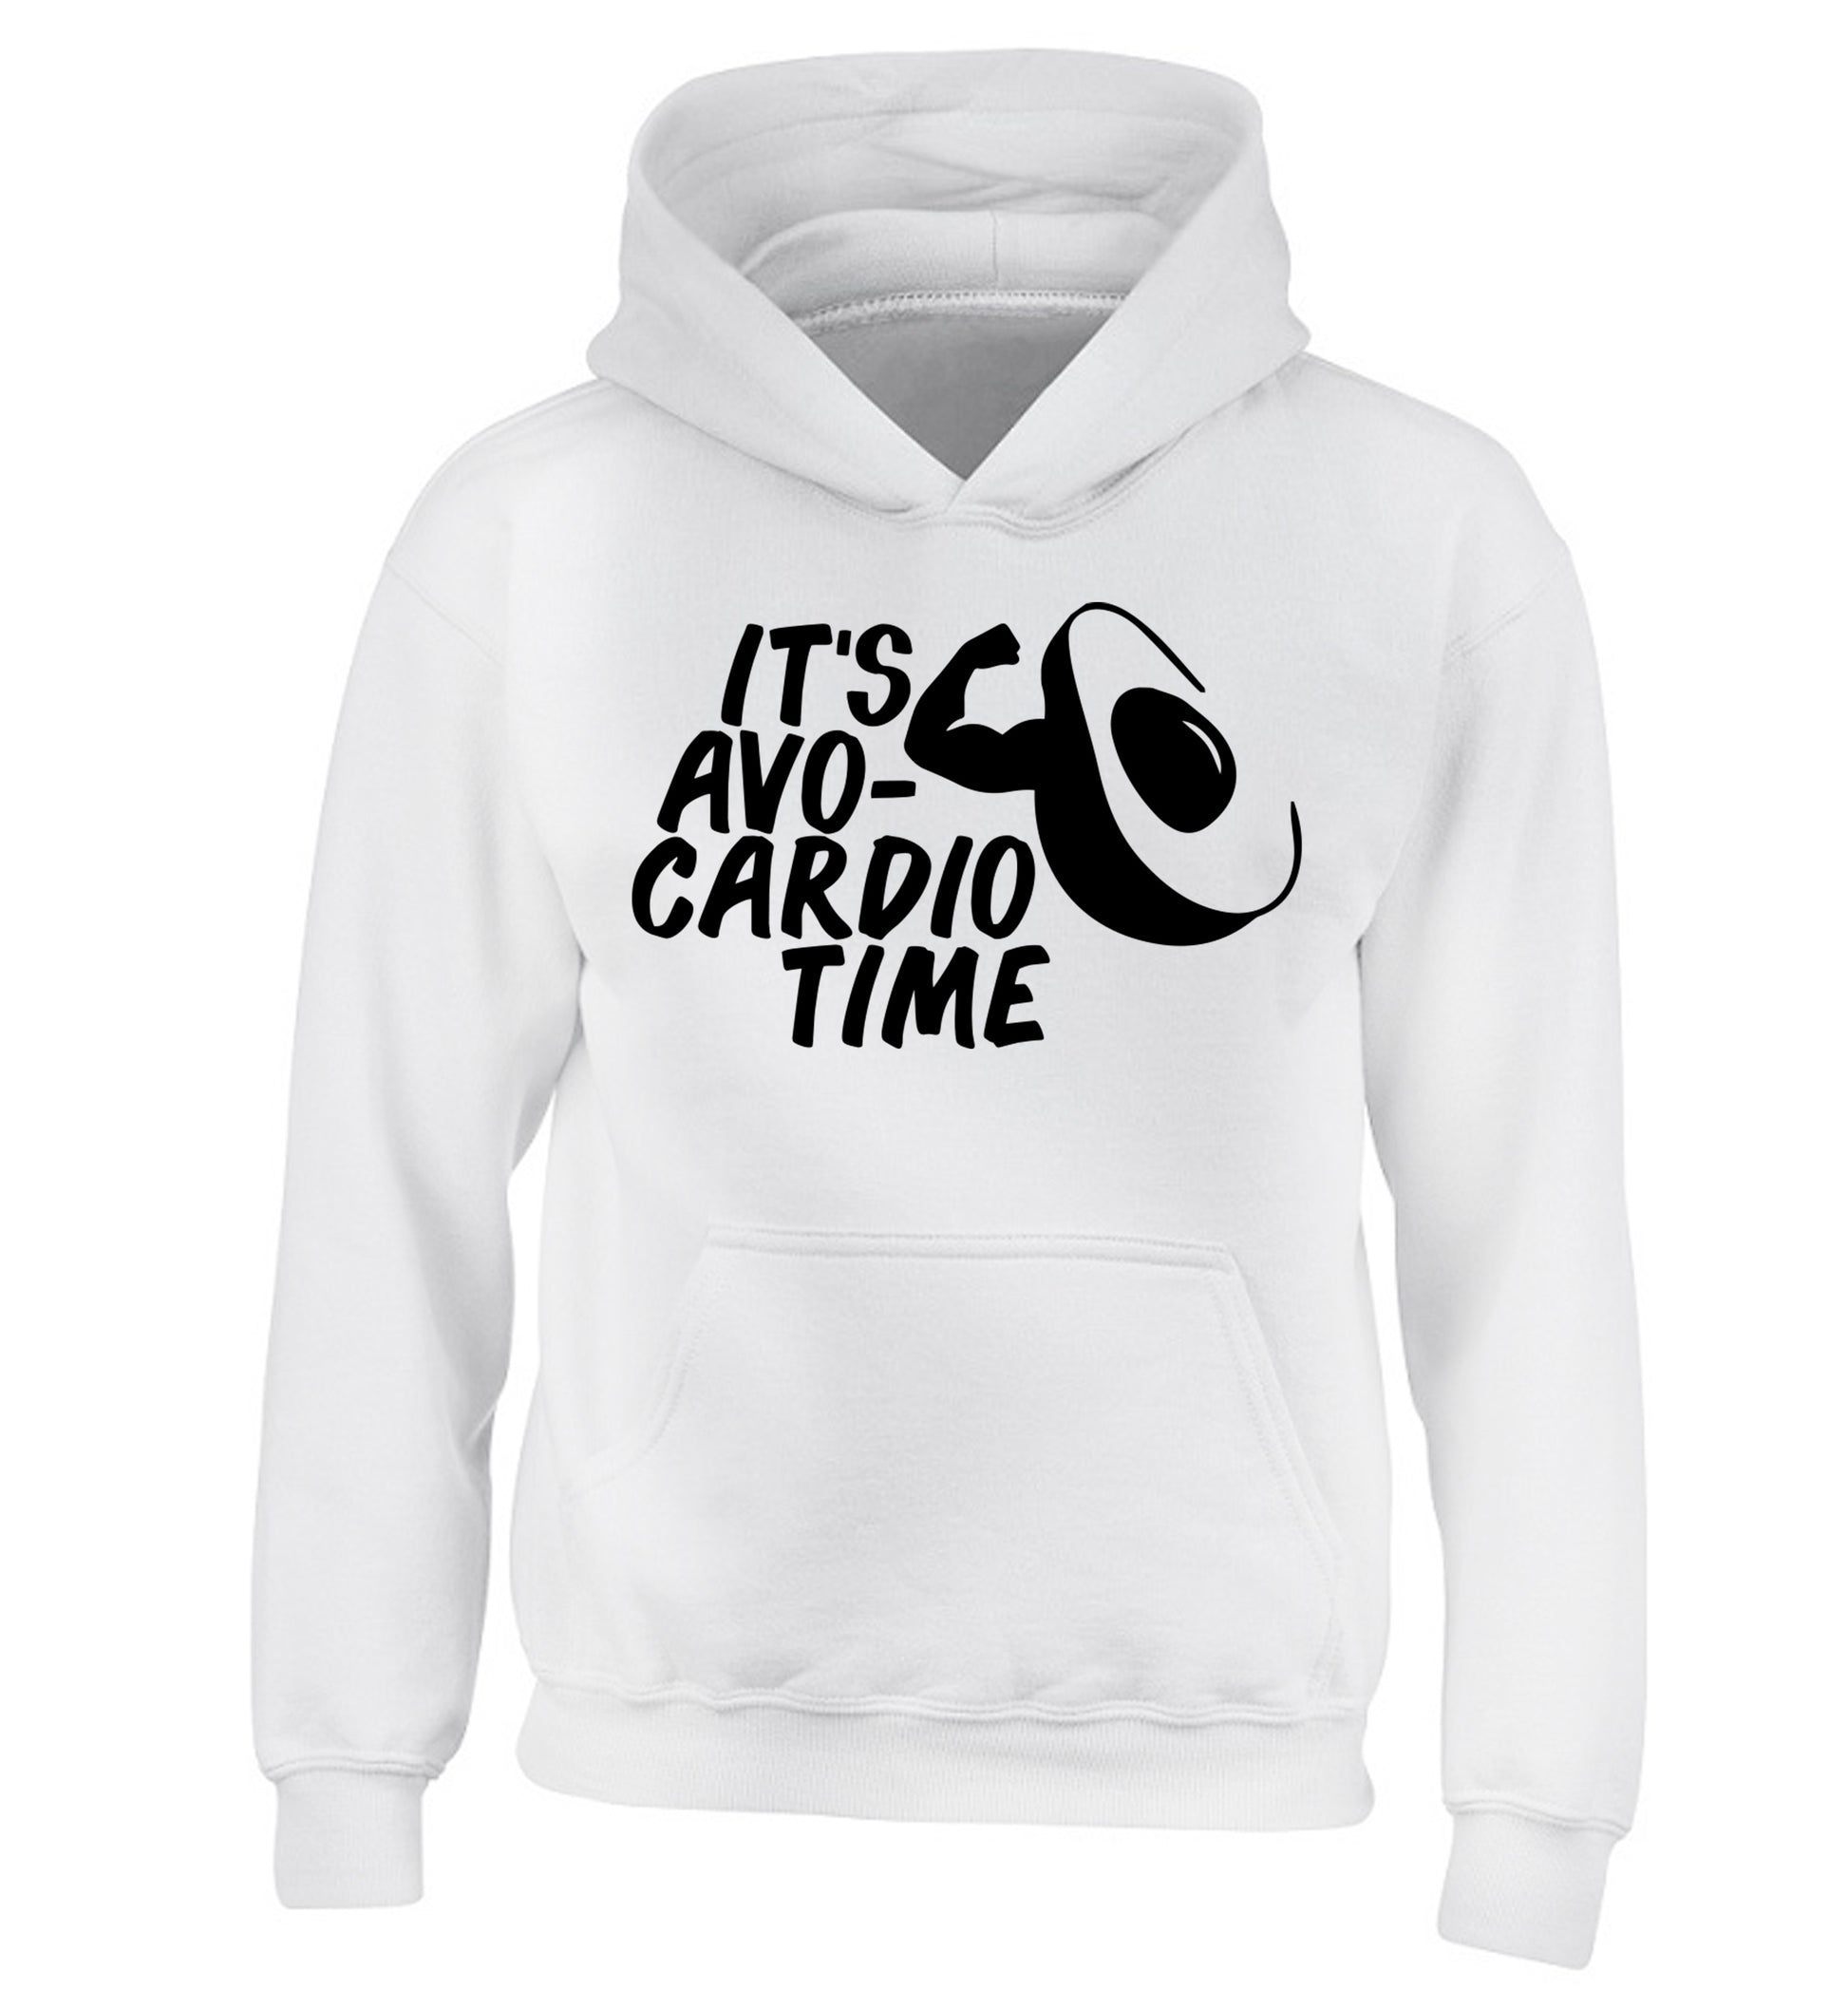 It's avo-cardio time children's white hoodie 12-14 Years